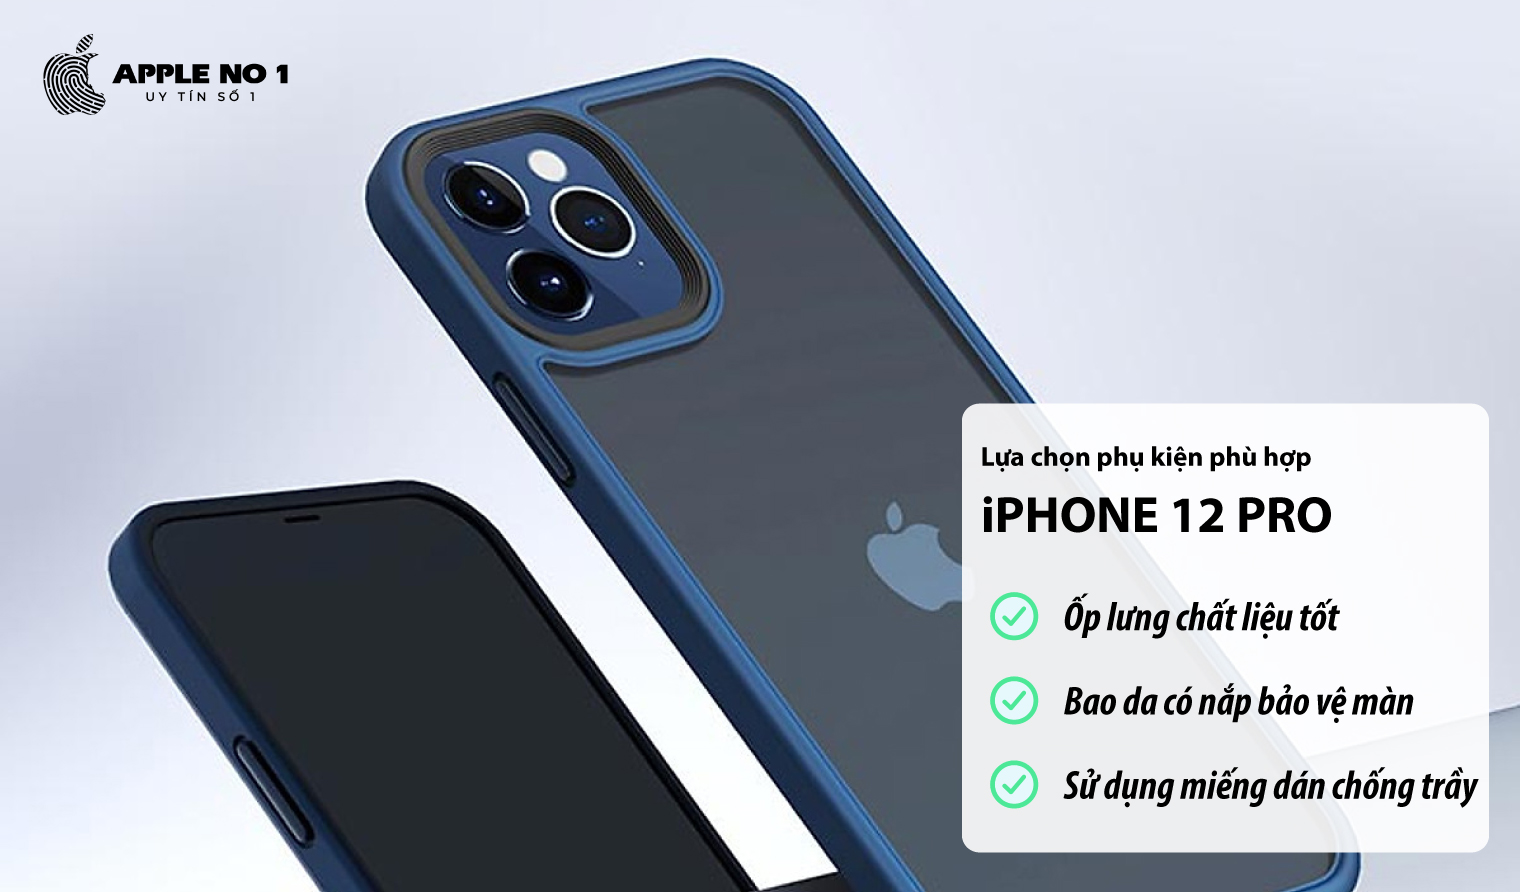 Chon phu kien phu hop de bao ve mat kinh iPhone 12 Pro?